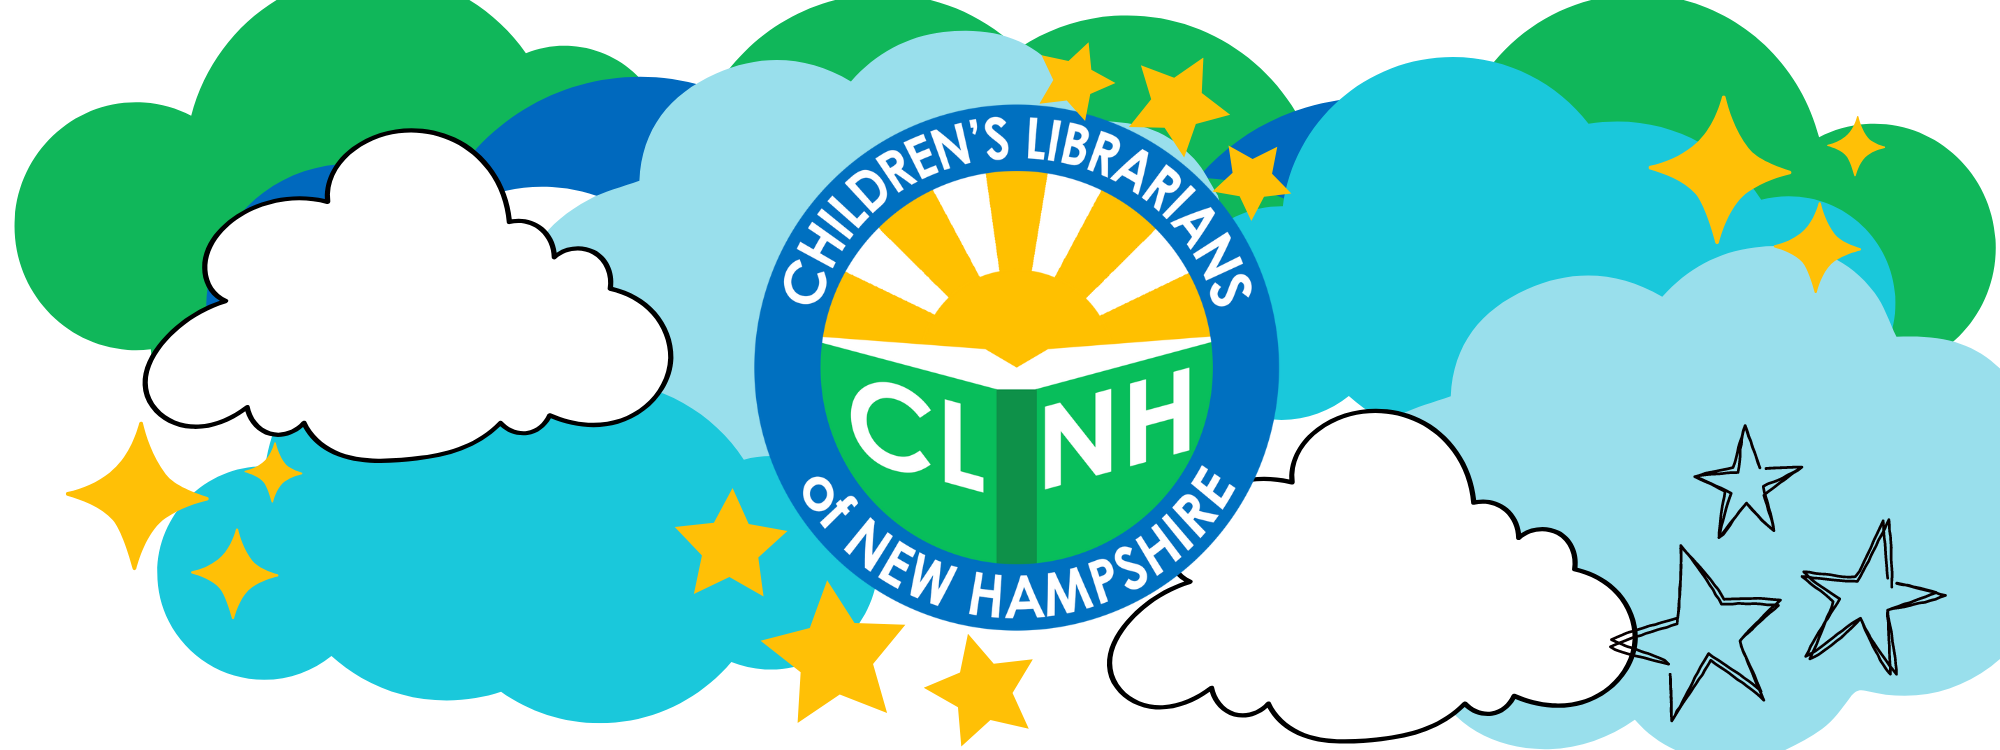 CLNH logo amid clouds